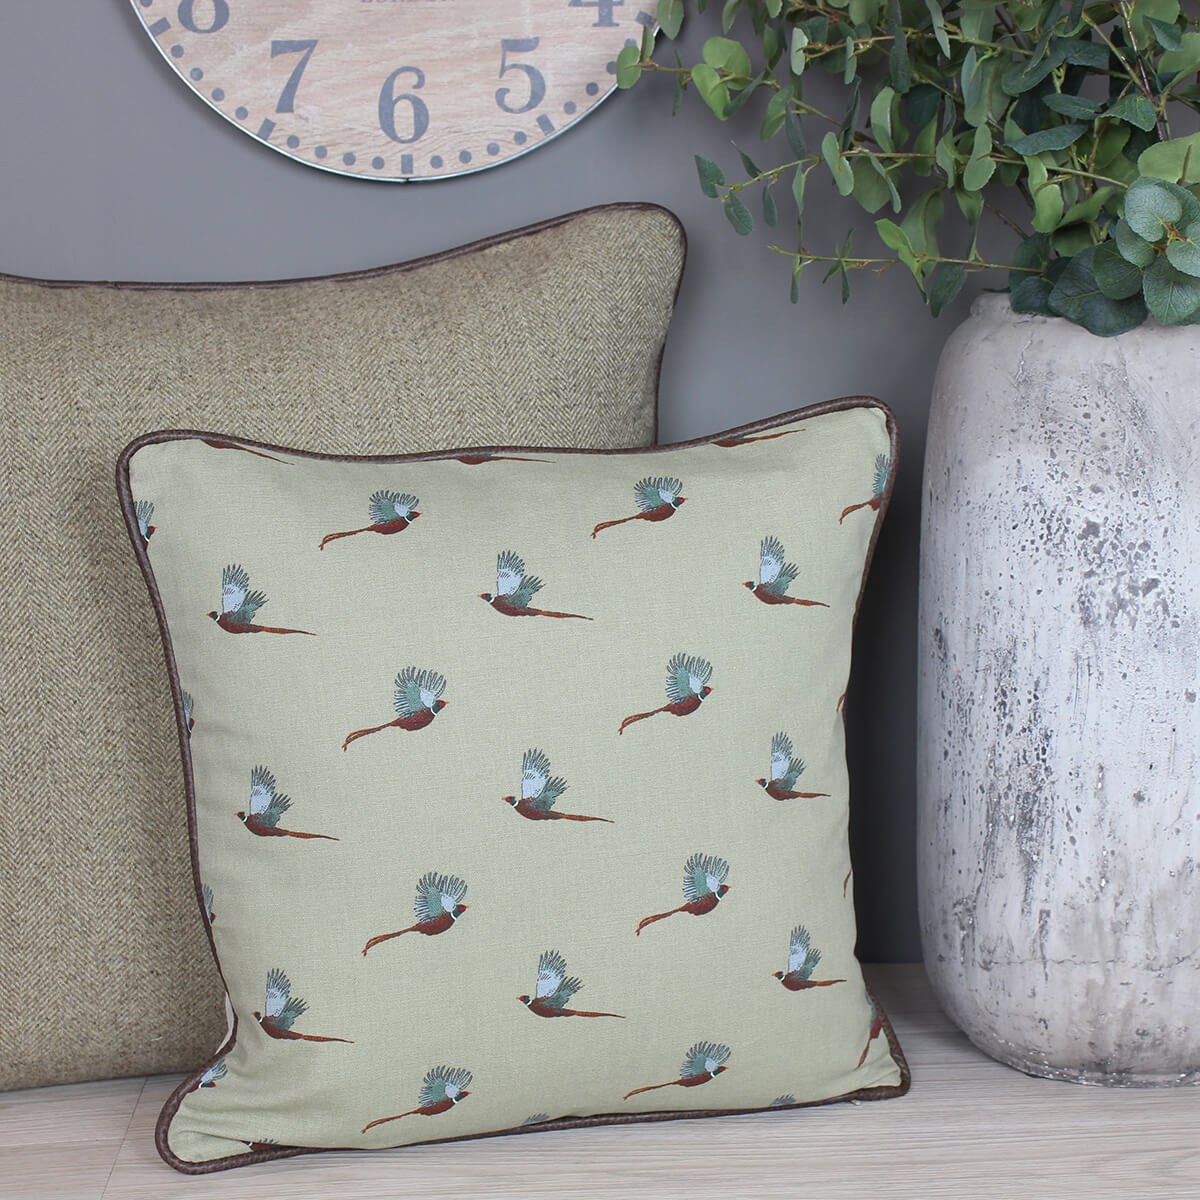 Pheasant Sophie Allport Fabric Cushion